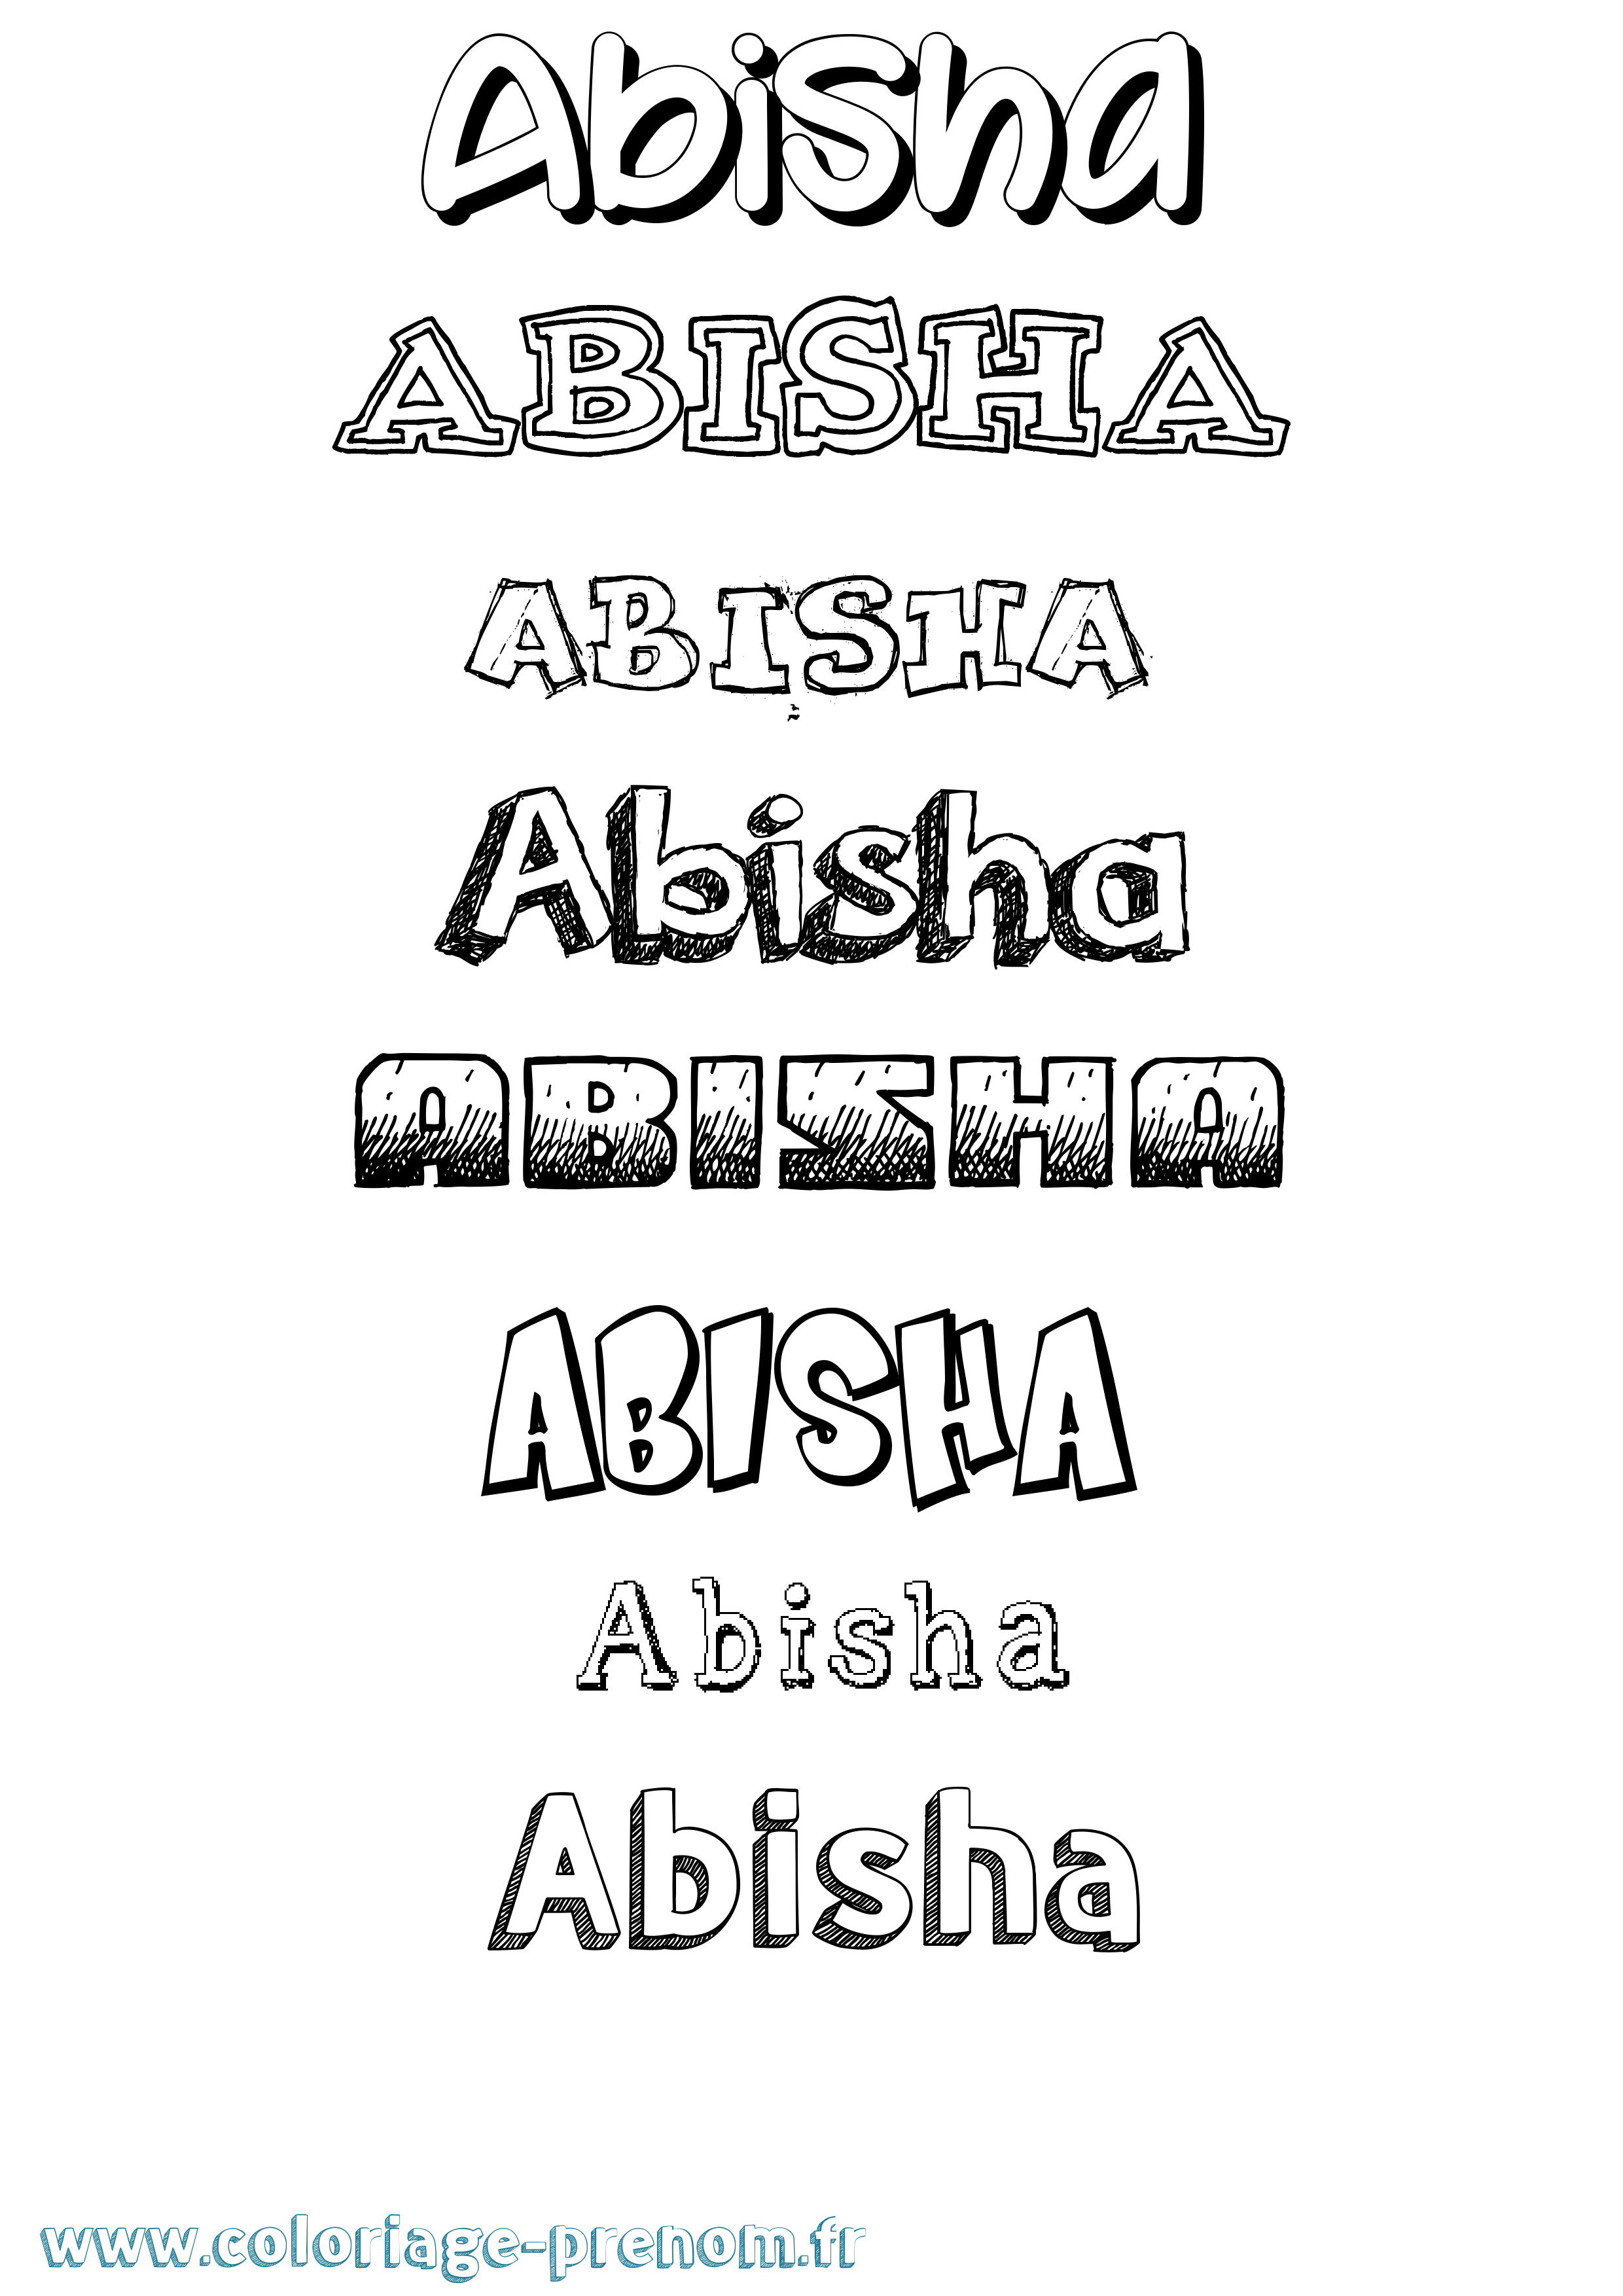 Coloriage prénom Abisha Dessiné